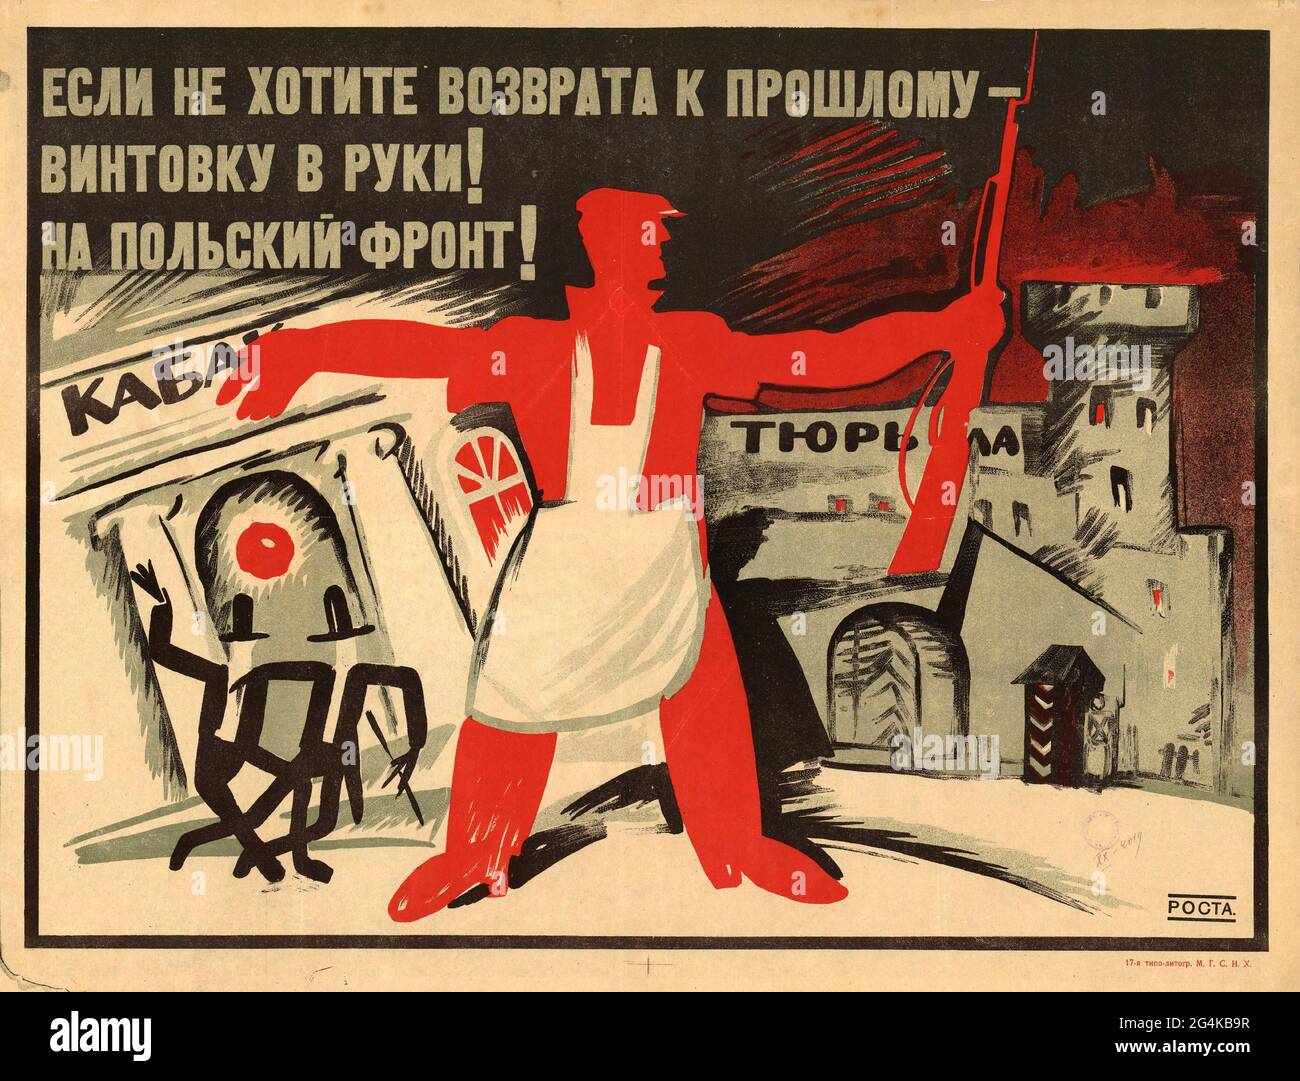 Prendi un fucile in mano! Al fronte polacco!, 1920. Trovato nella collezione della Biblioteca di Stato Russa, Mosca. Foto Stock